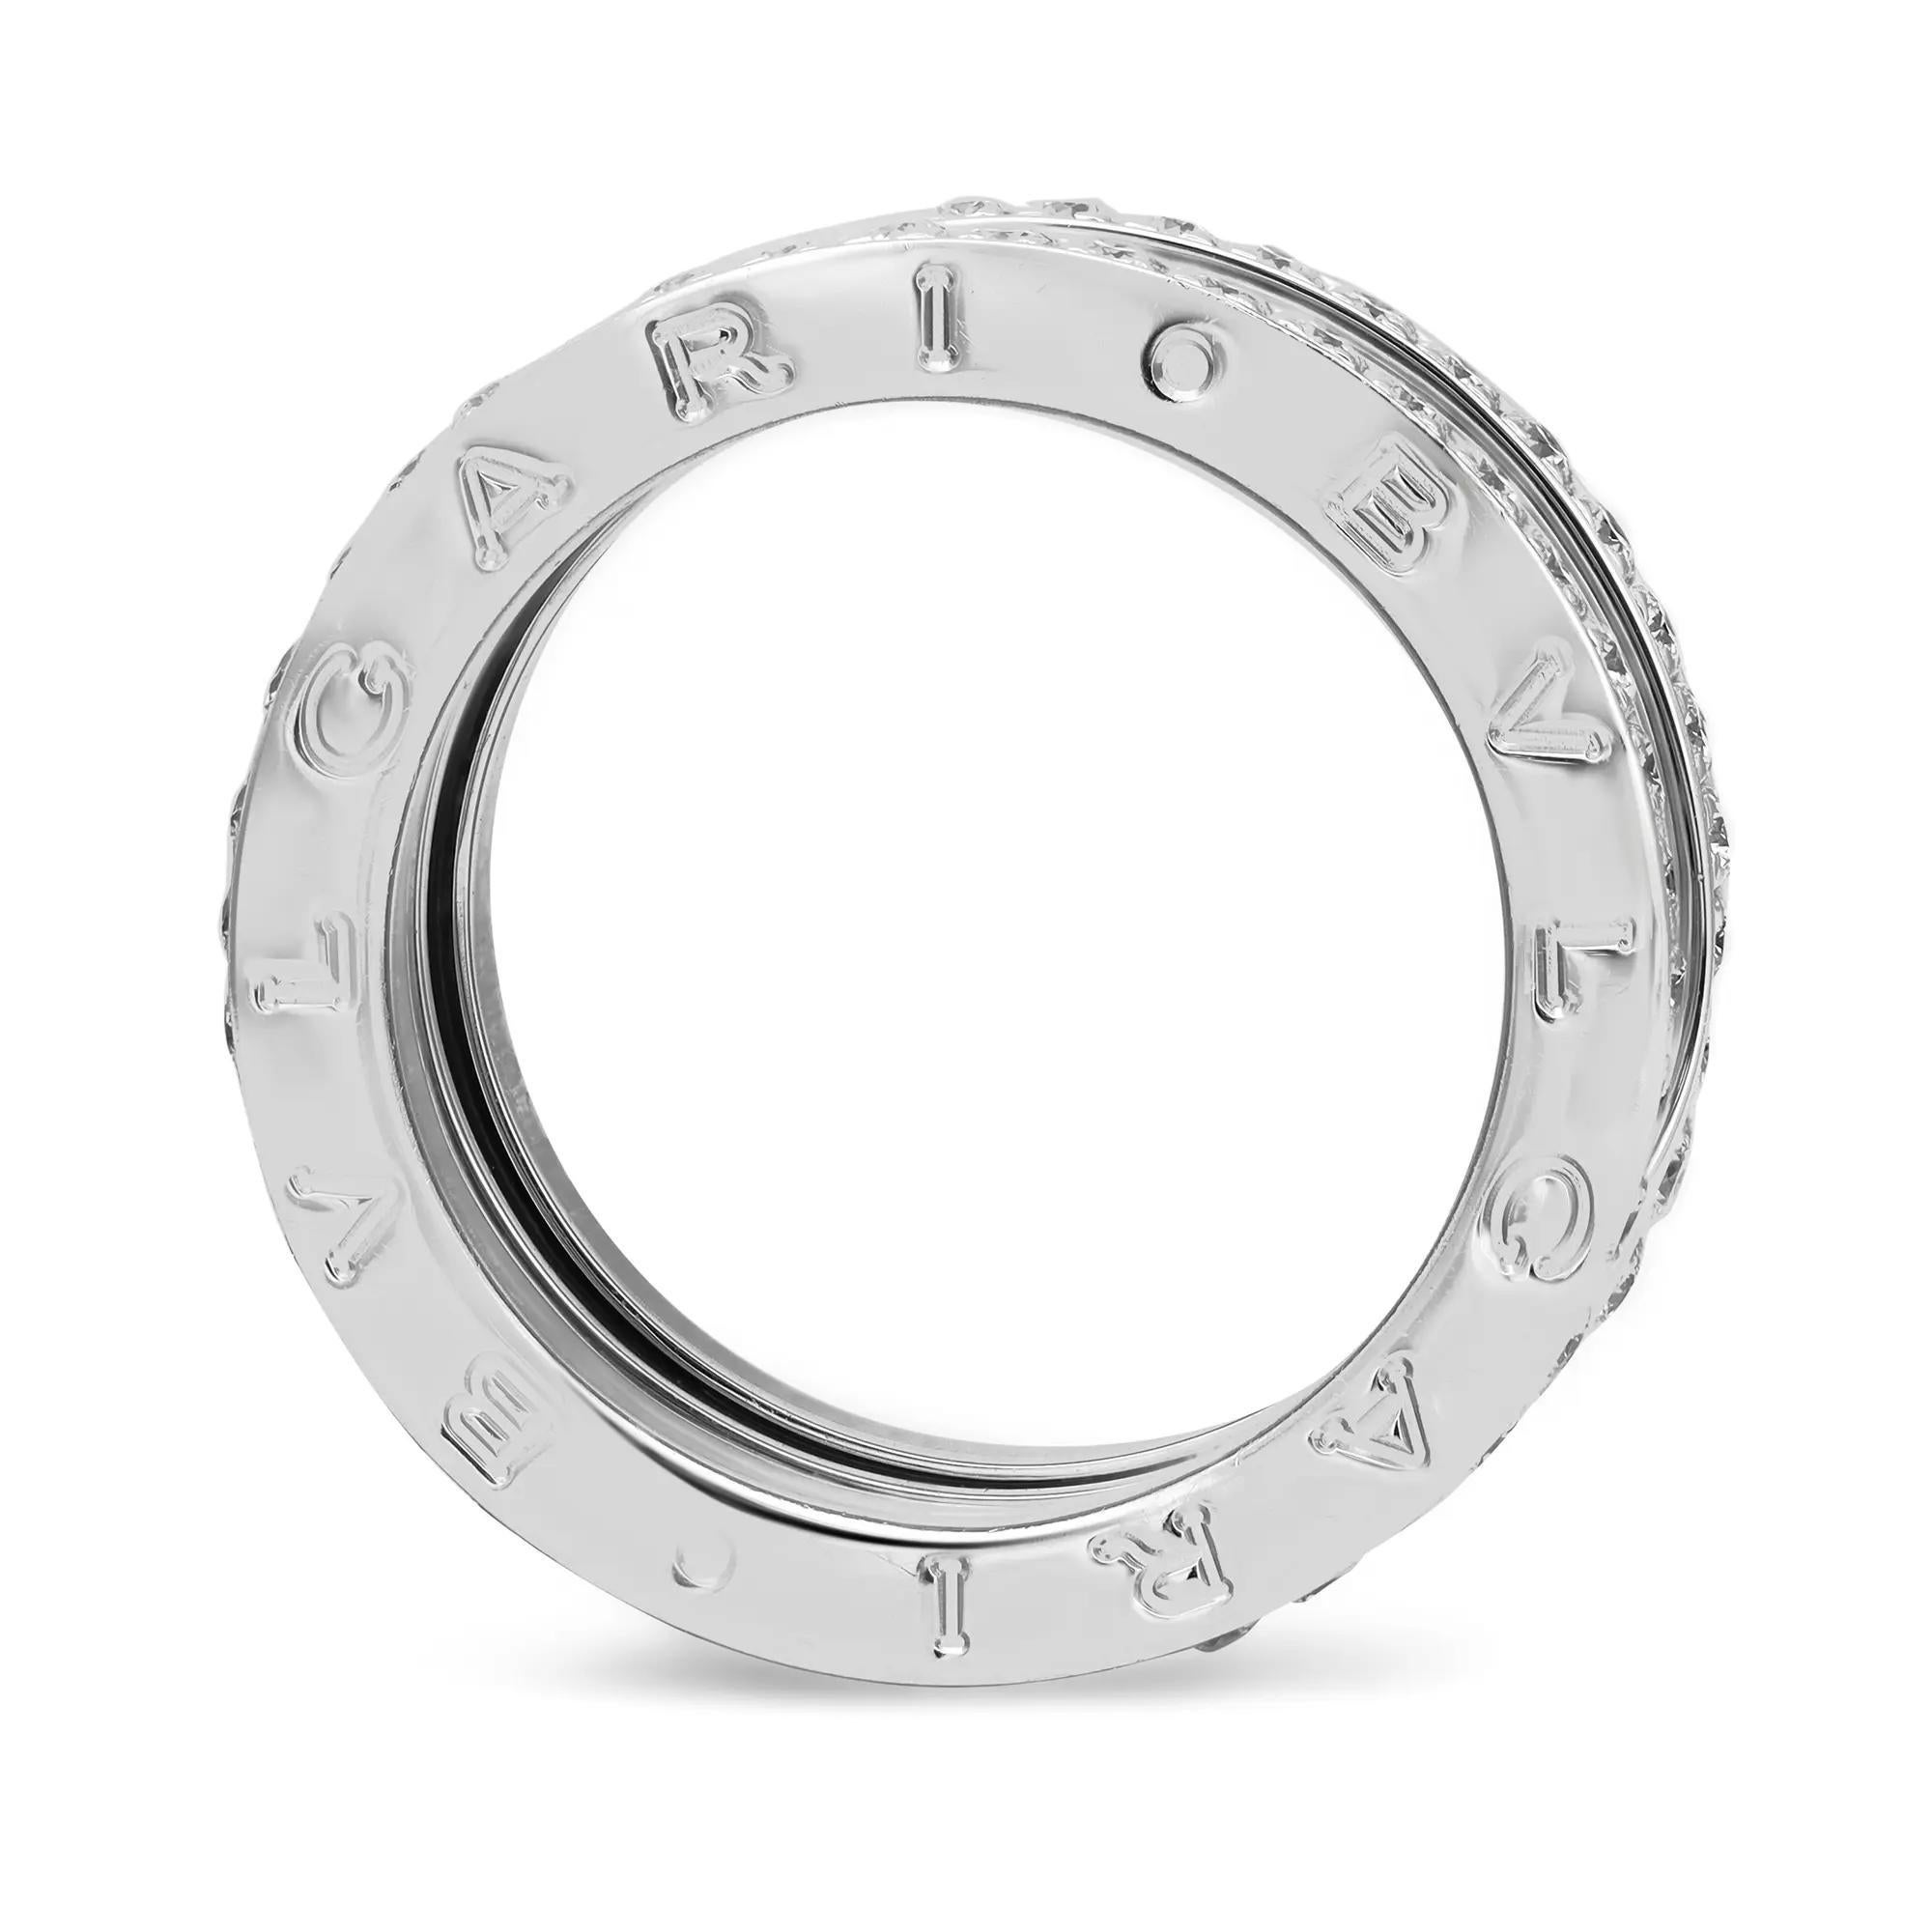 Dieser wunderschöne Ring aus der Bvlgari B.zero1 Kollektion mit vier Bändern ist aus glänzendem 18 Karat Weißgold gefertigt. Er zeichnet sich durch einen unverwechselbaren Spiralring mit vier Bändern aus, der an den Rändern mit runden Diamanten im